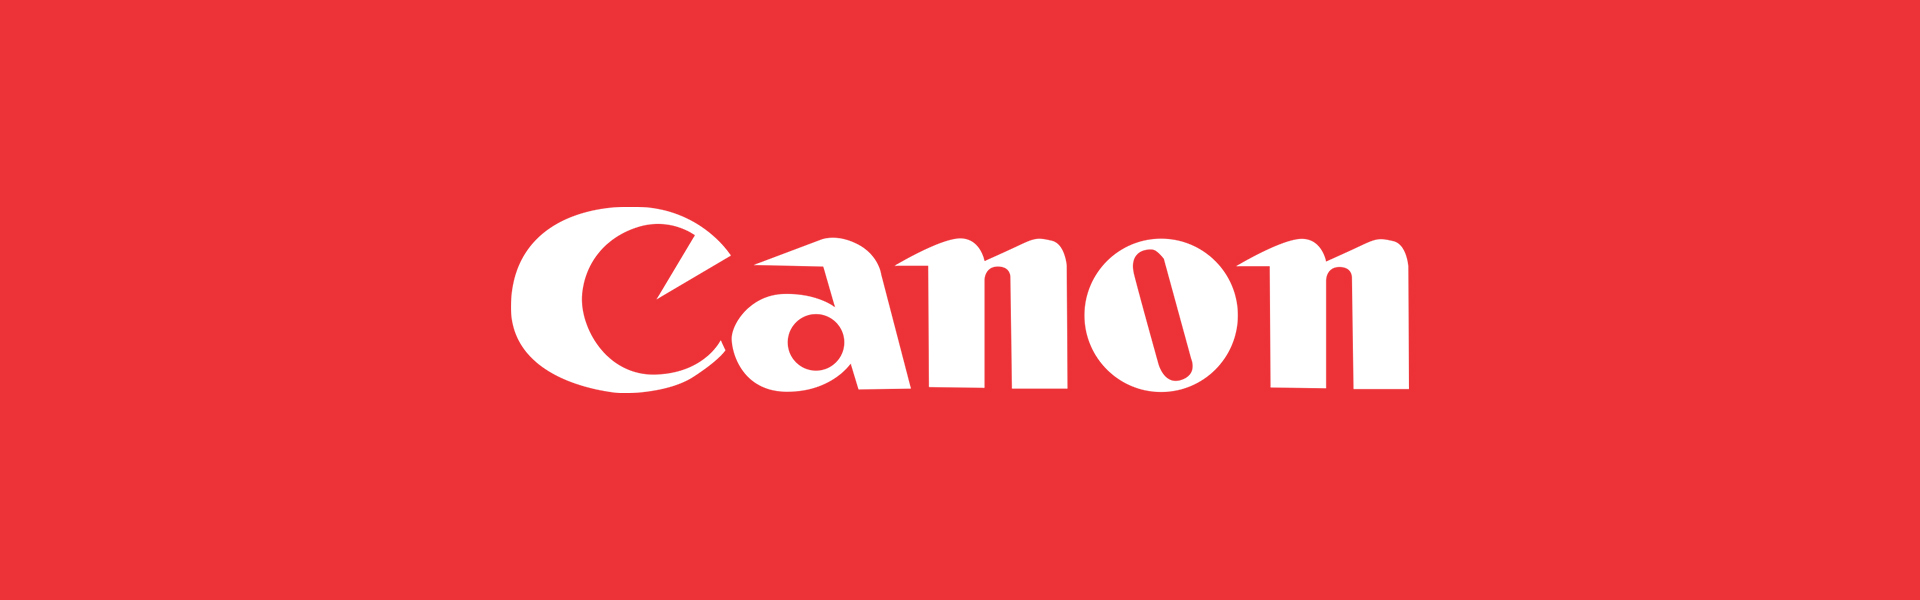 Canon Powershot SX740 HS, sudrabots Canon